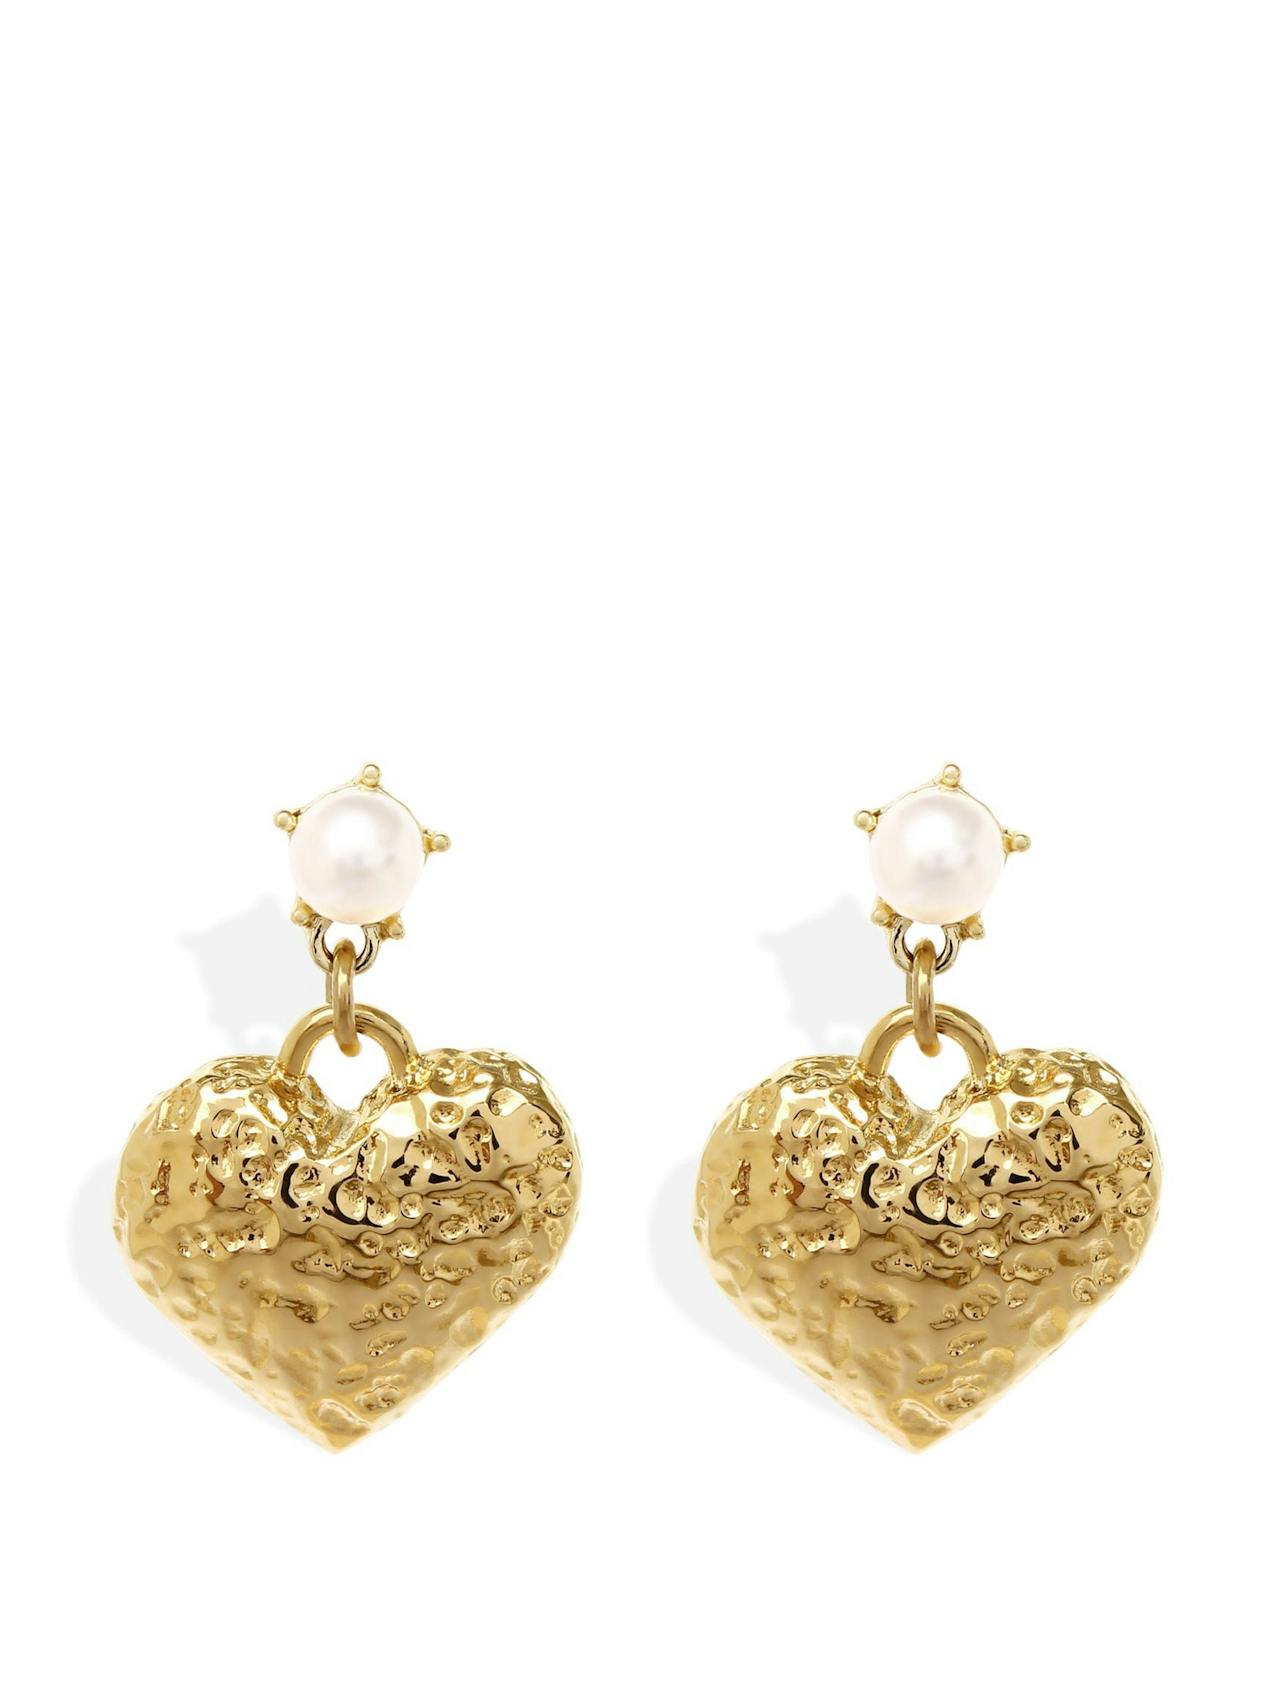 Gold Sadie earrings with pearl